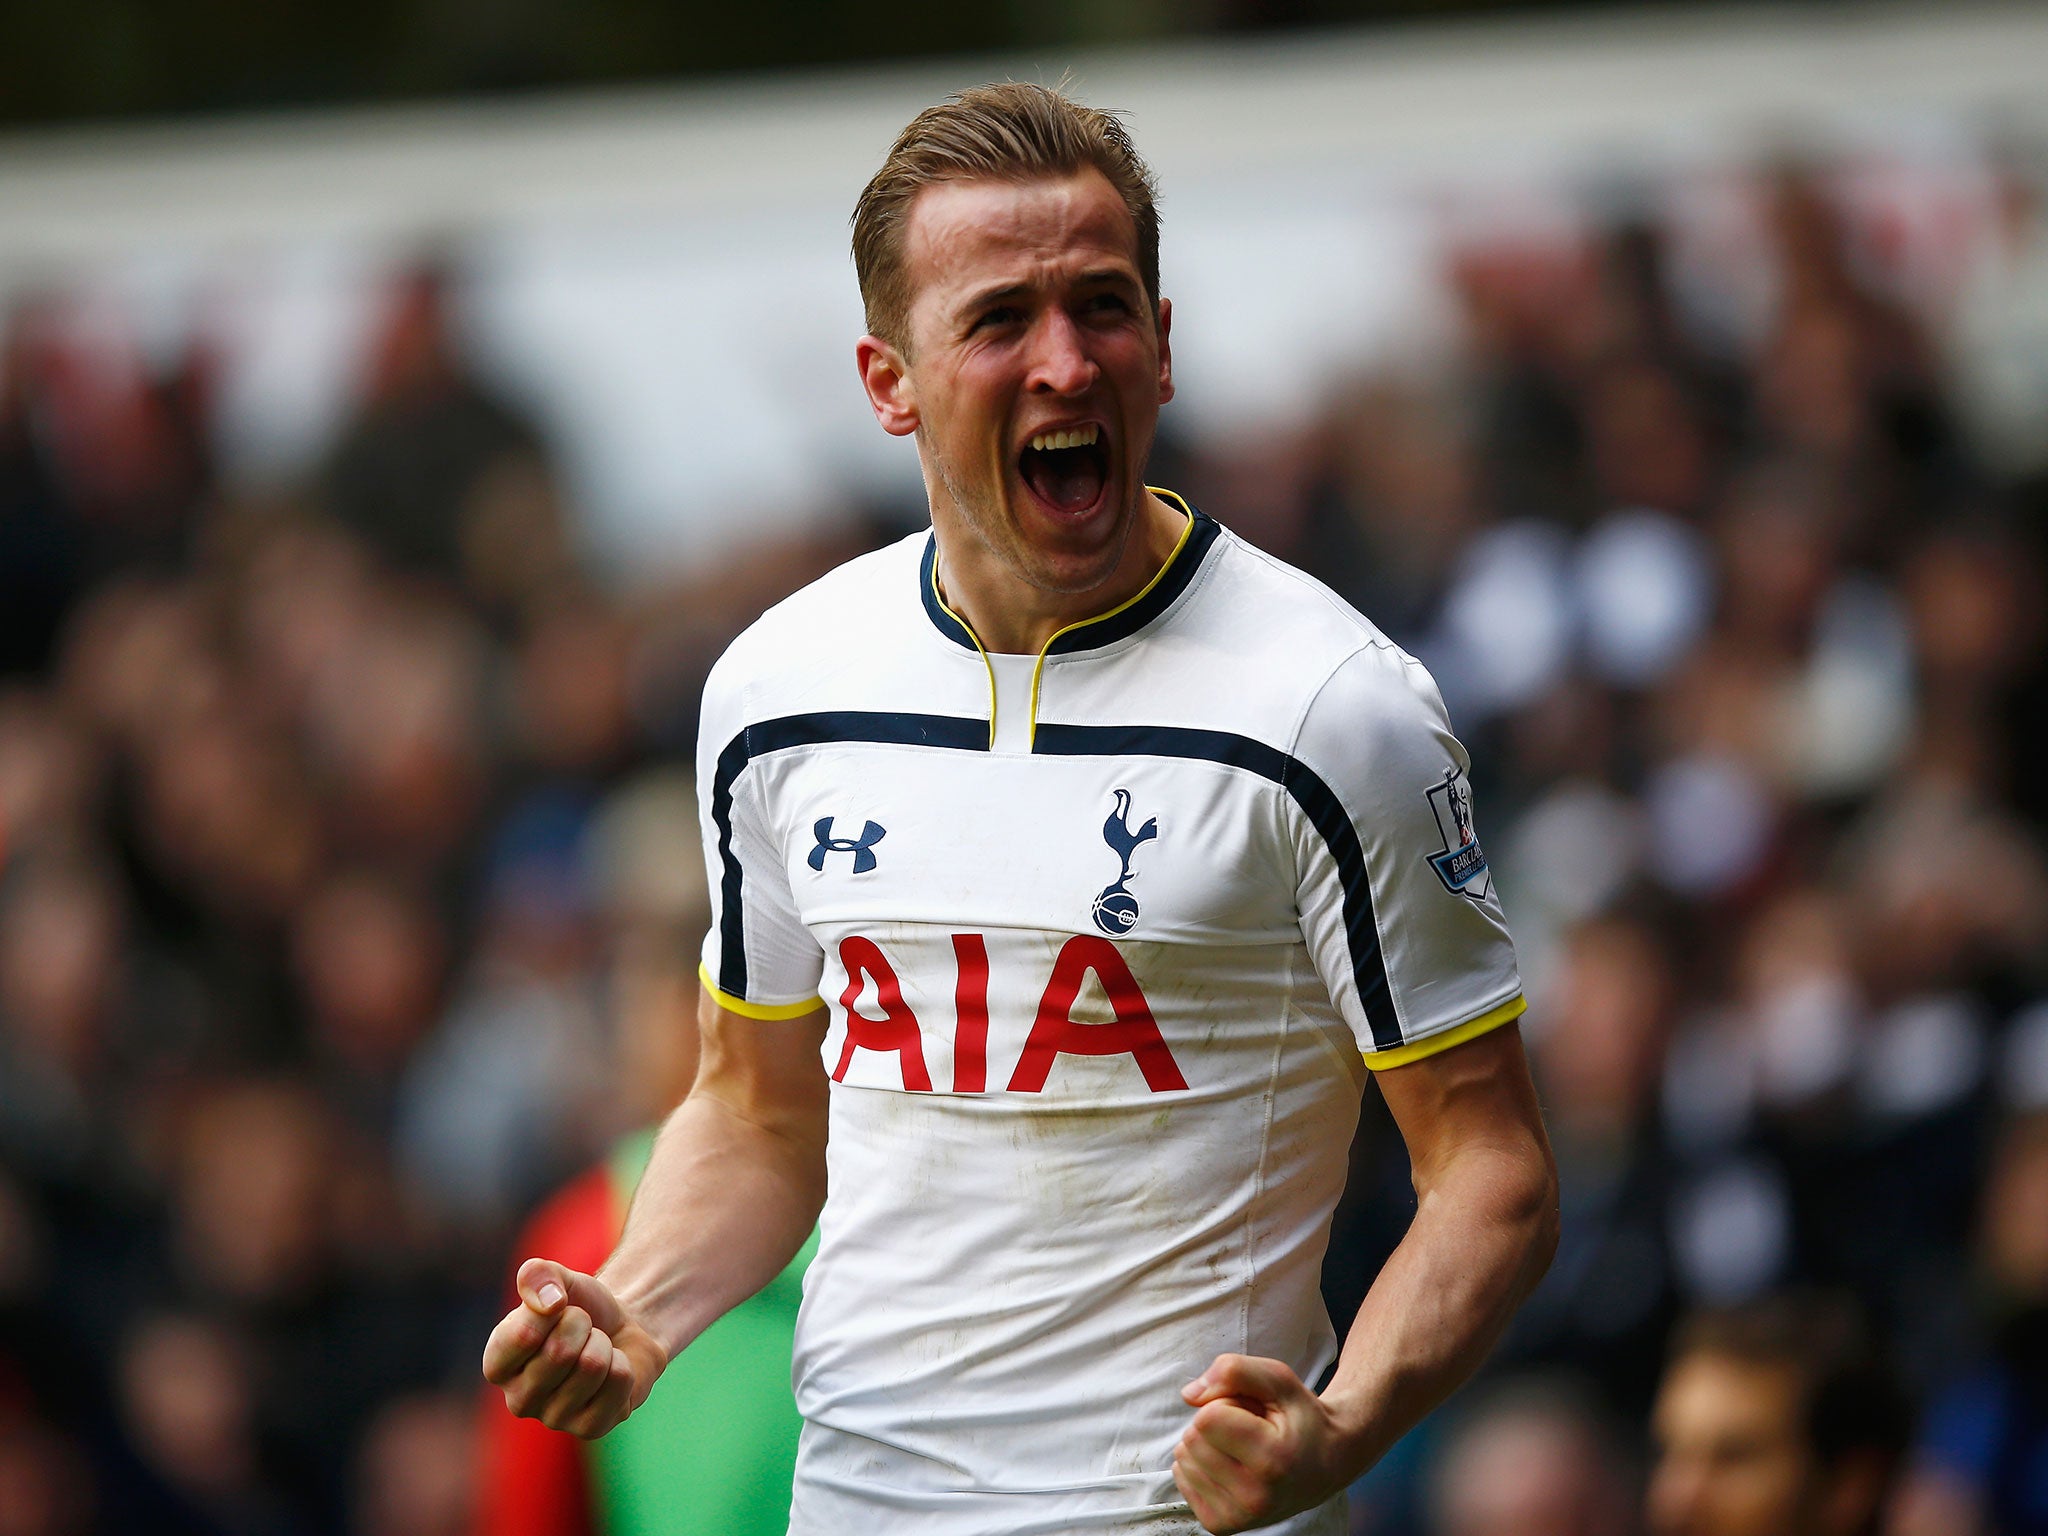 Tottenham striker Harry Kane celebrates scoring against Arsenal